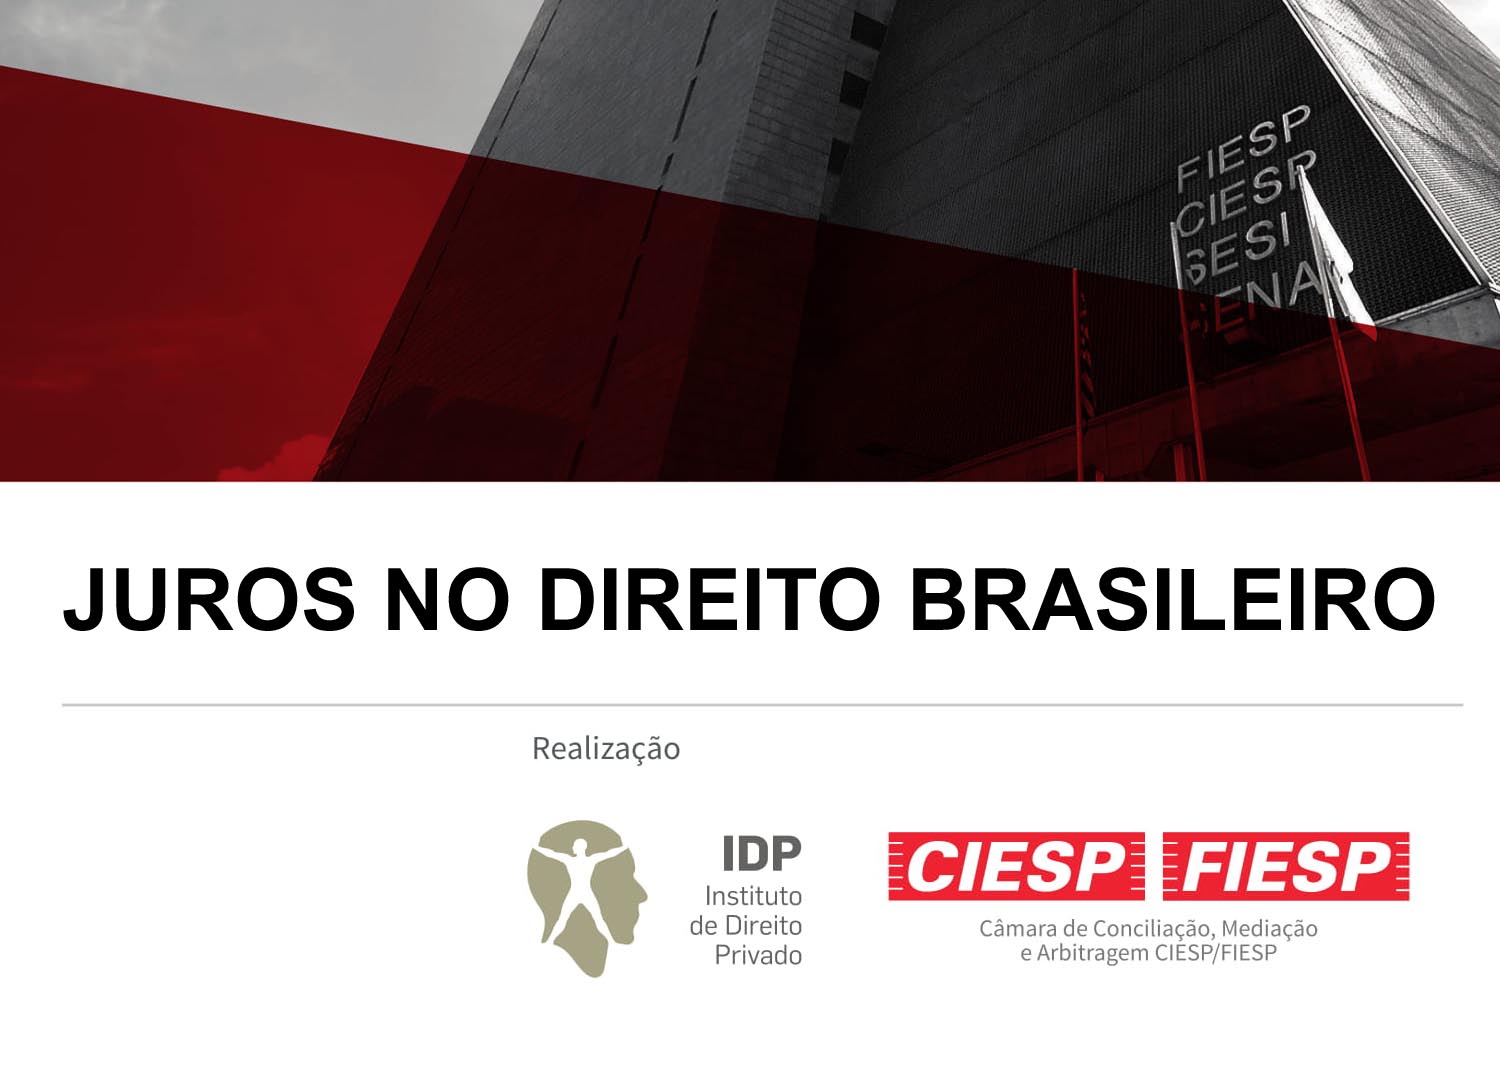 Juros no Direito Brasileiro -  Camara de Conciliacao, Mediacao e Arbitragem Ciesp/fiesp